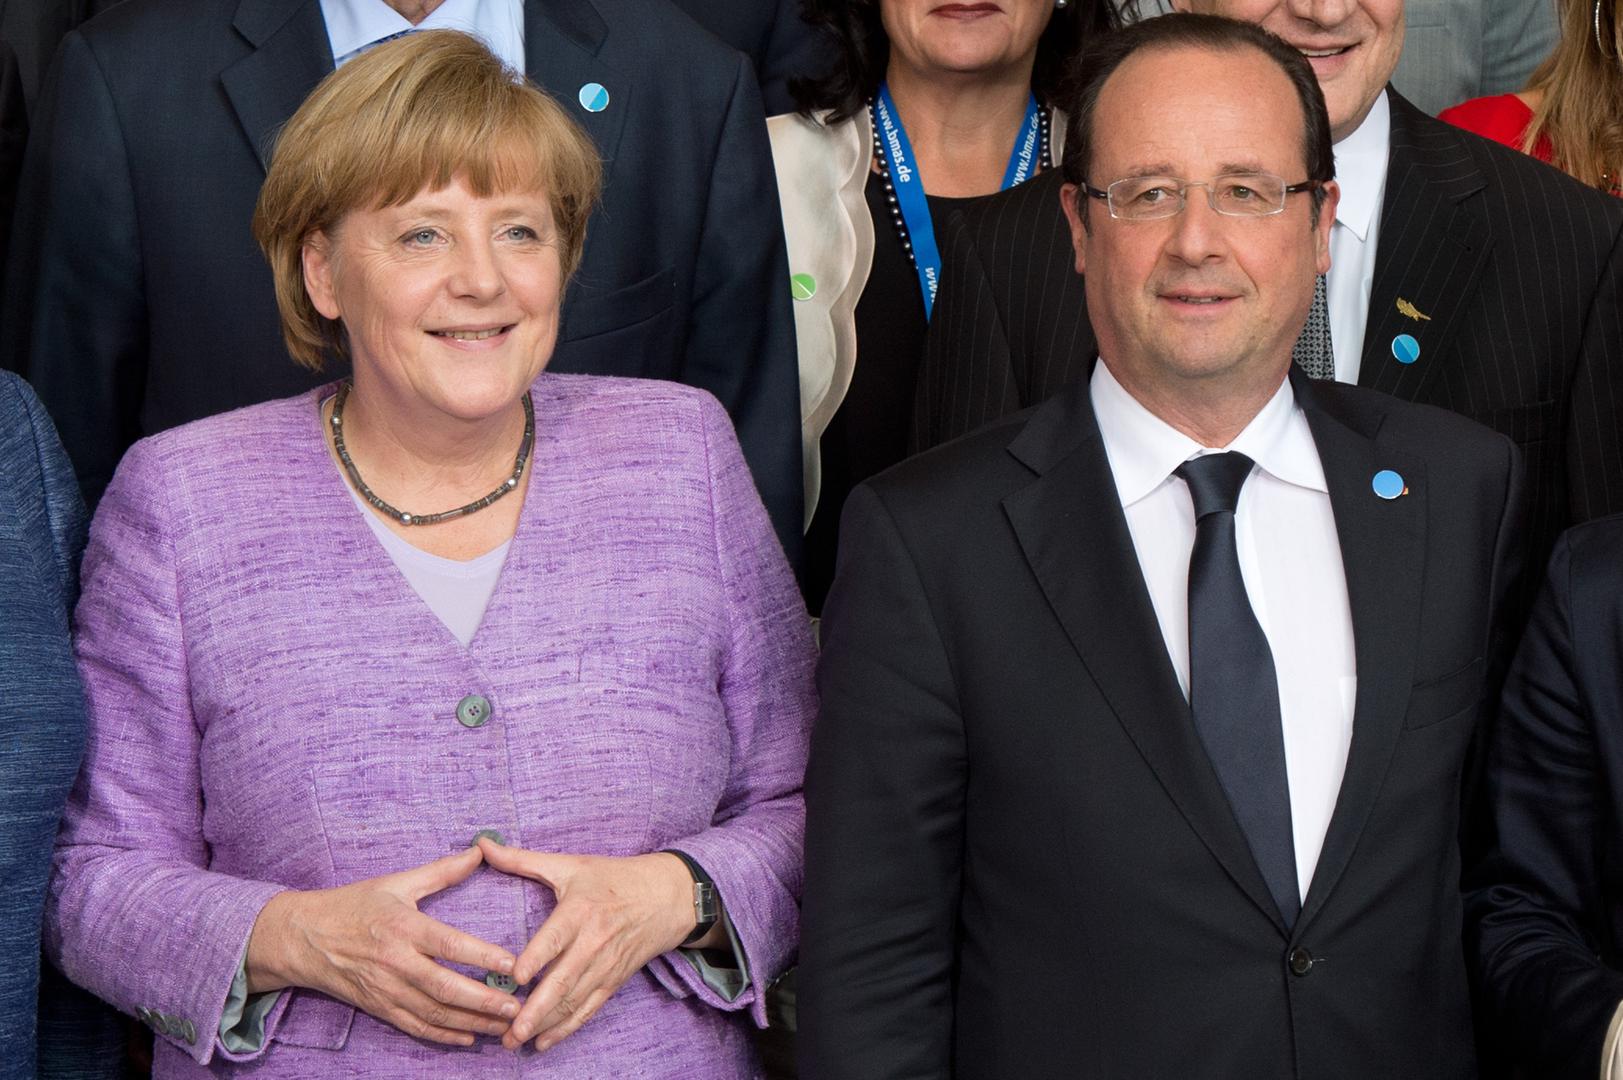 Godinama je Merkel u centru pažnje i njezin posao podrazumijeva i povremeno poziranje fotoreporterima.